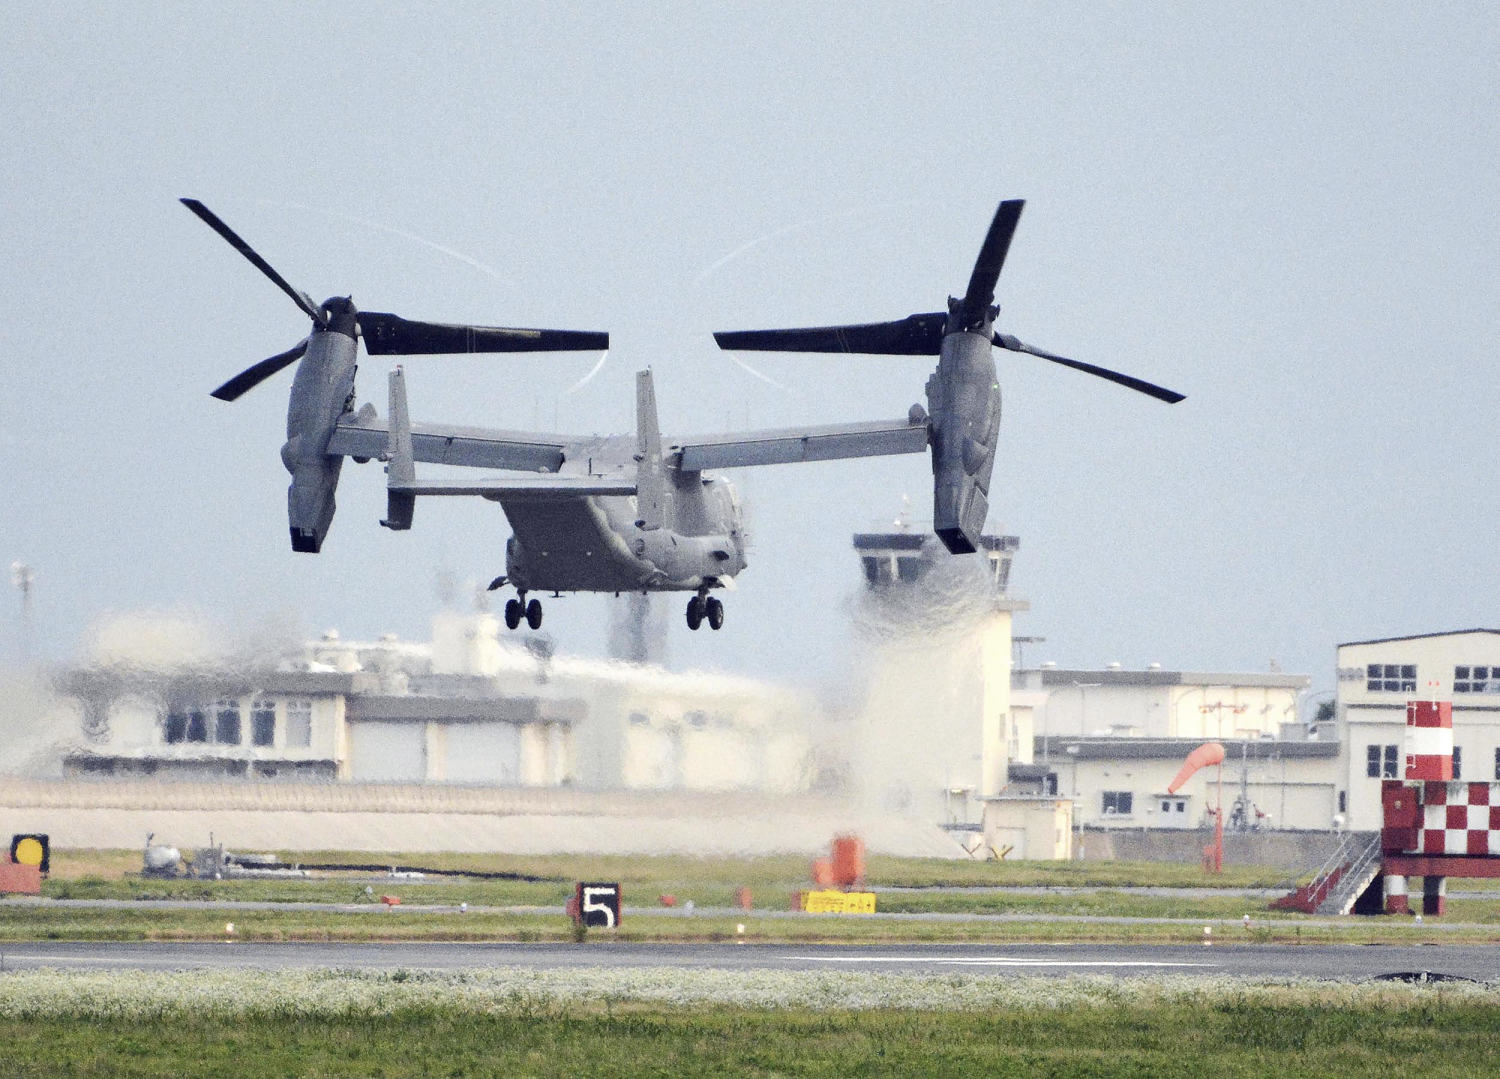 Japan ‘concerned’ by continued U.S. Osprey flights after fatal crash